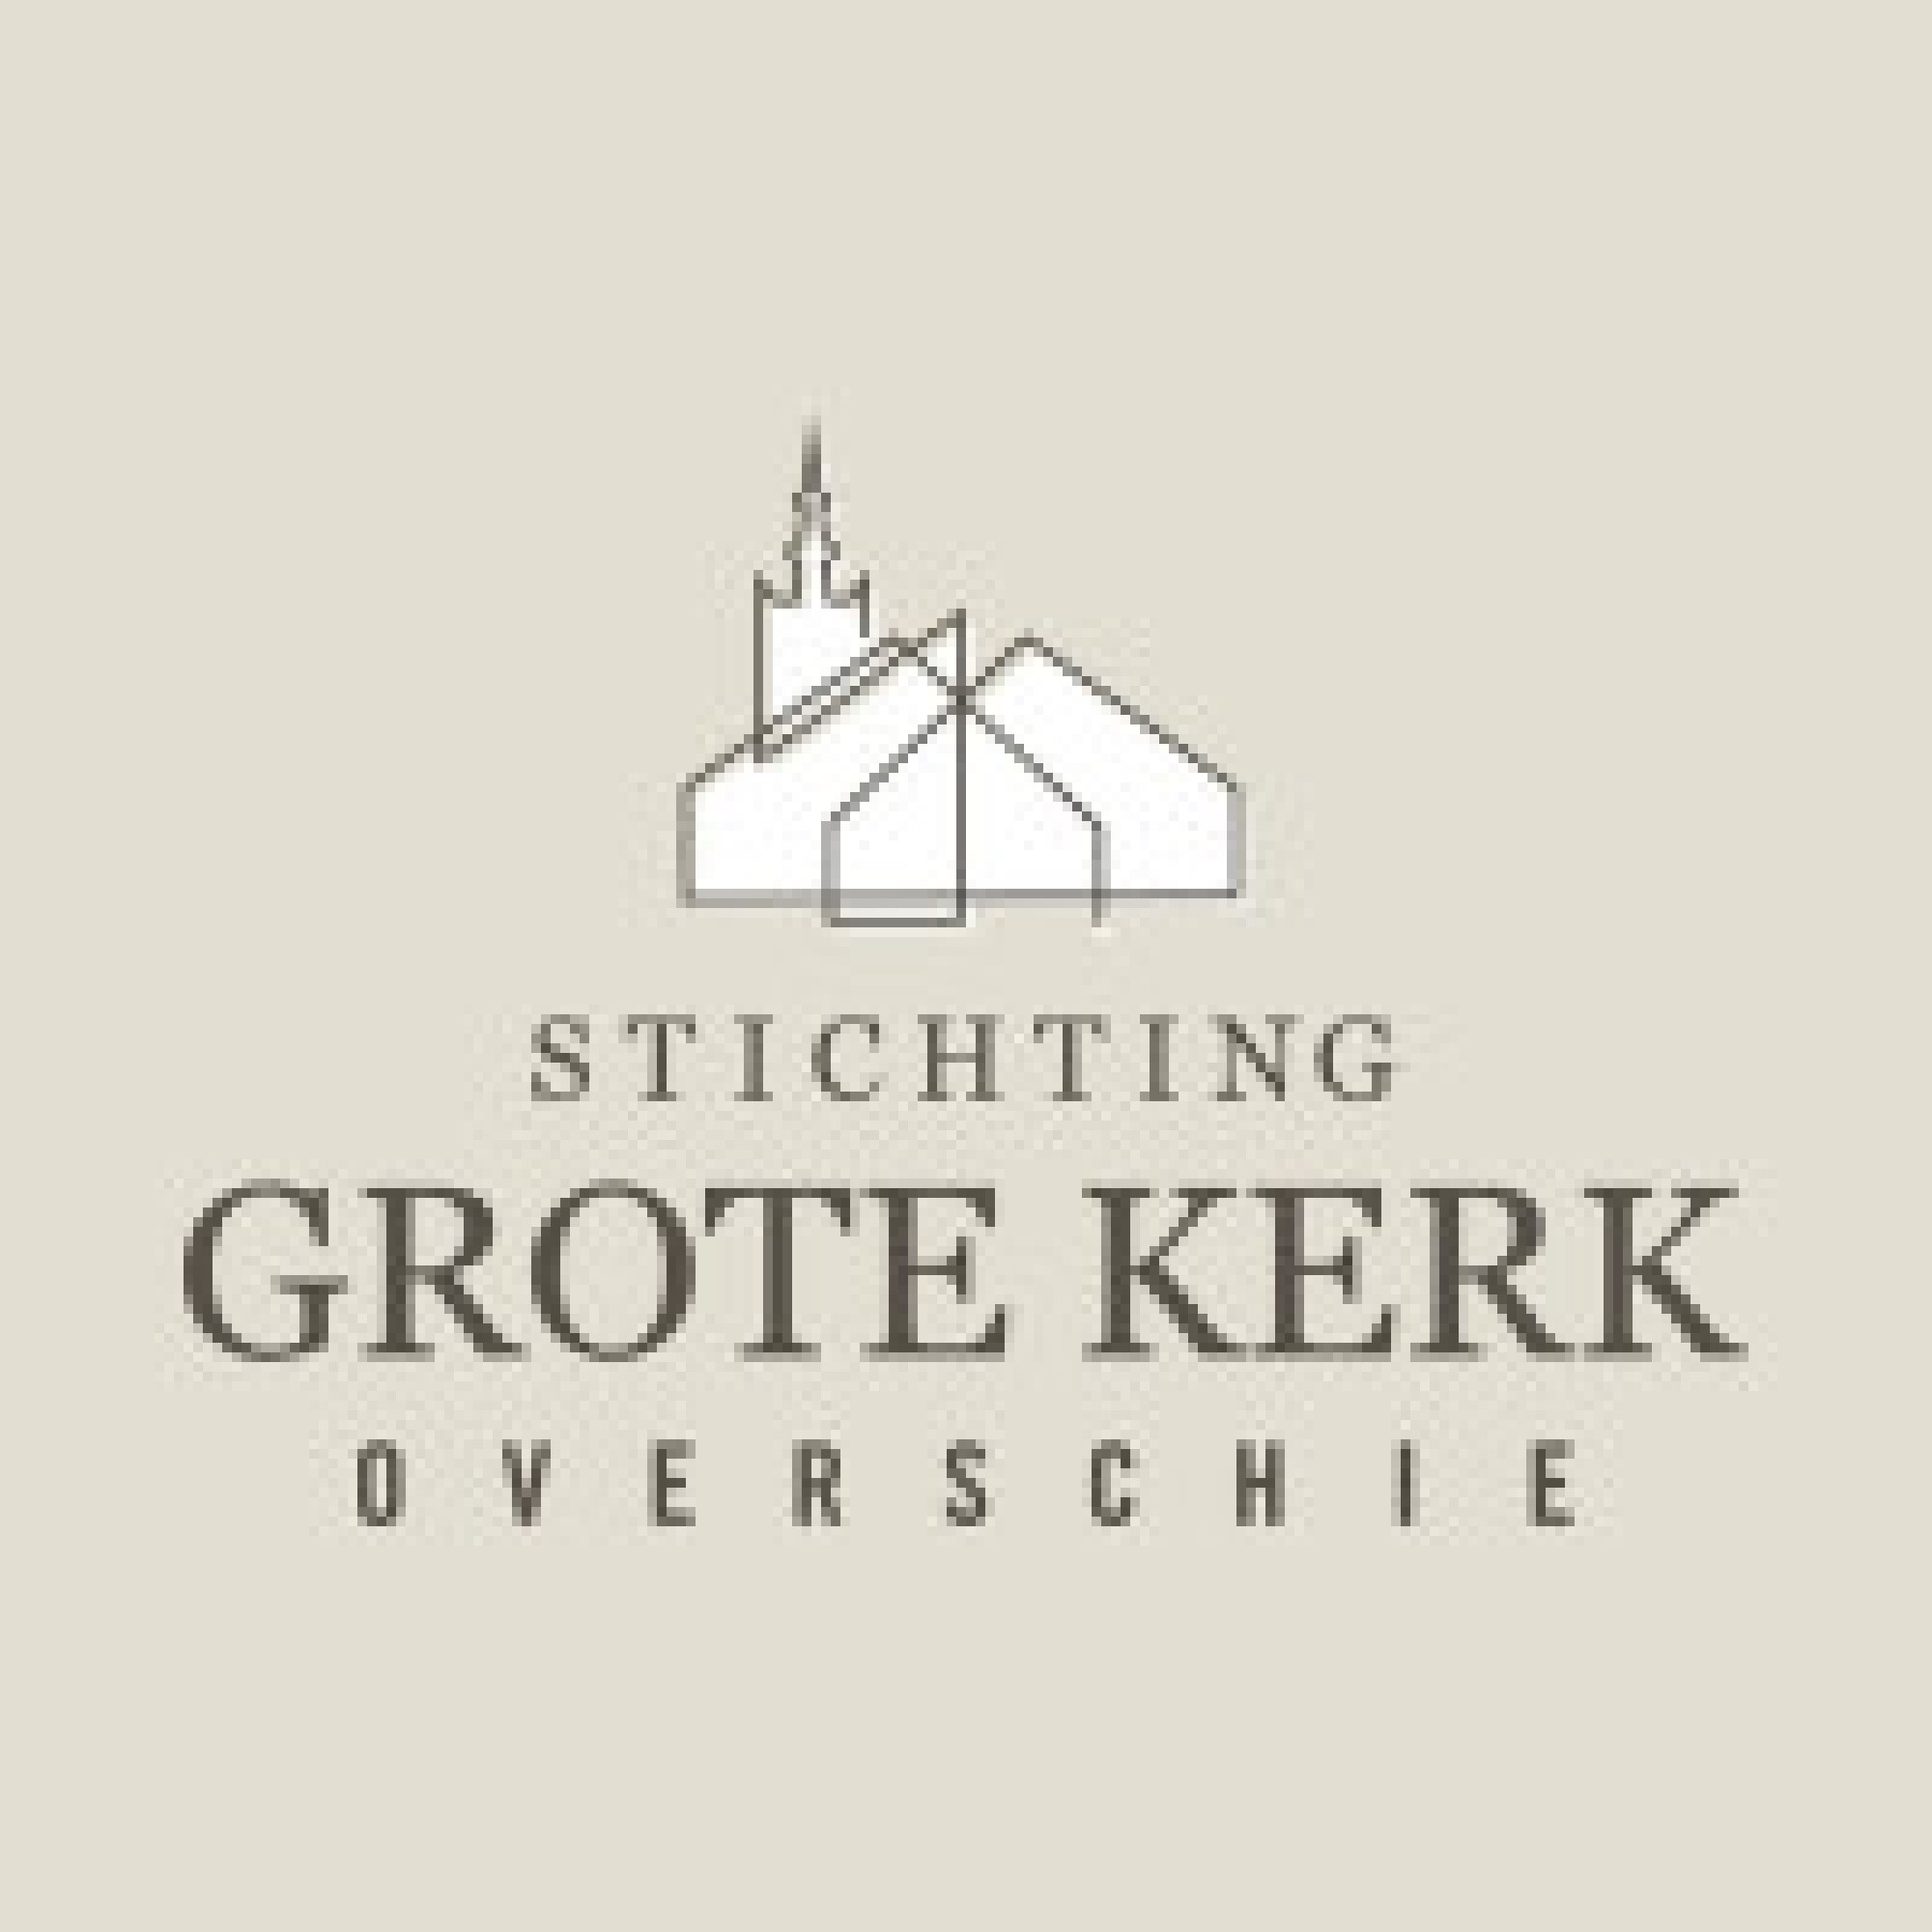 Stichting Grote Kerk Overschie